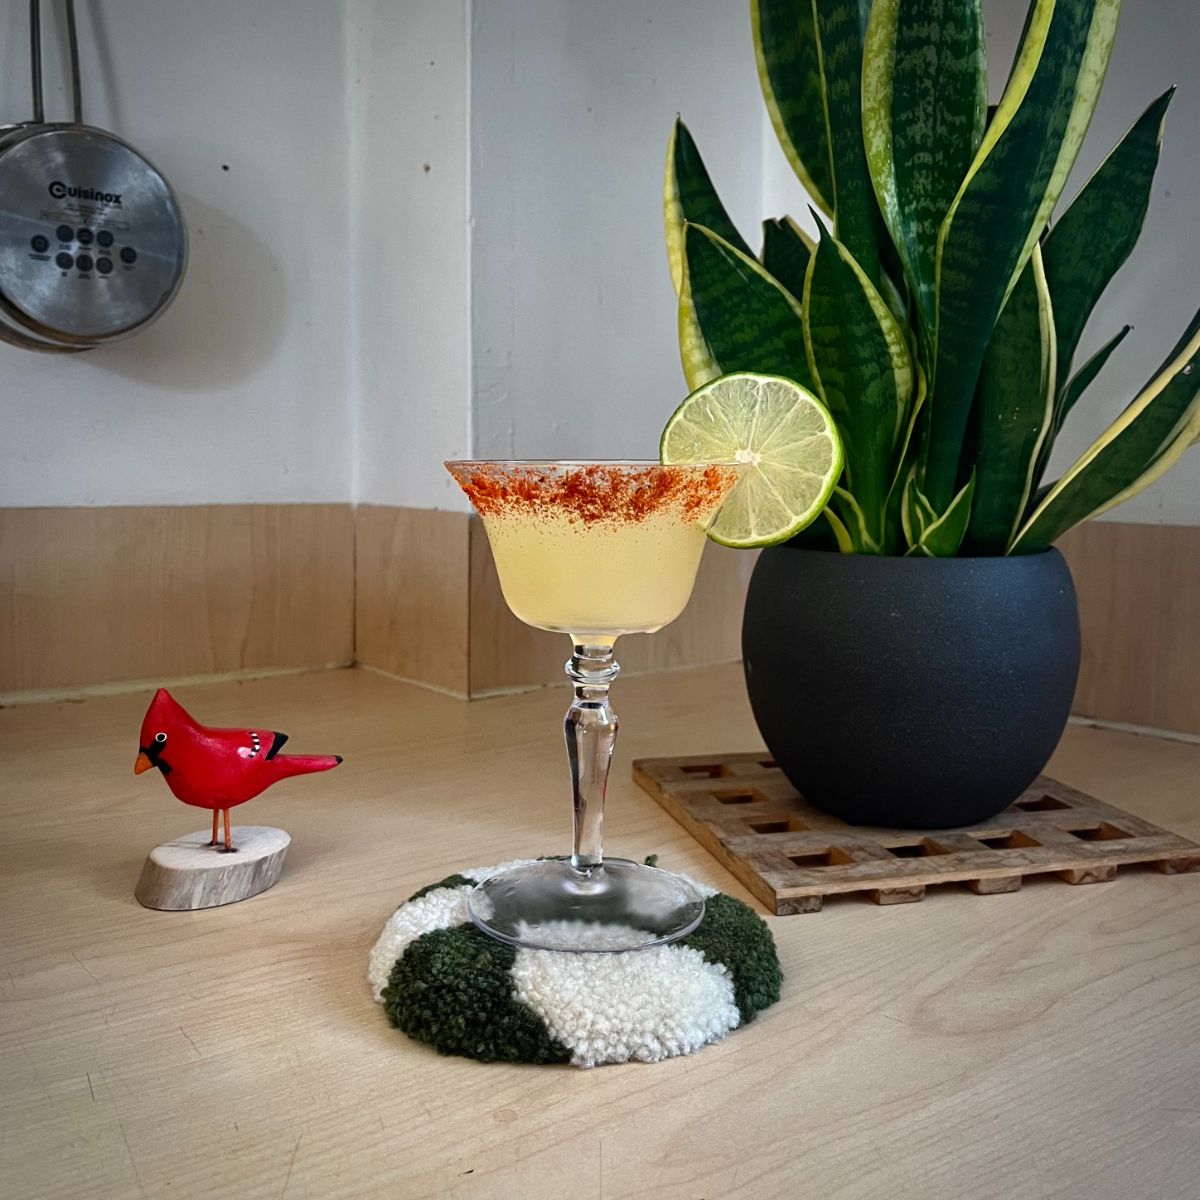 Margarita de Mango con Mezcal Ahumado en una copa adornada con rodajas de limón.